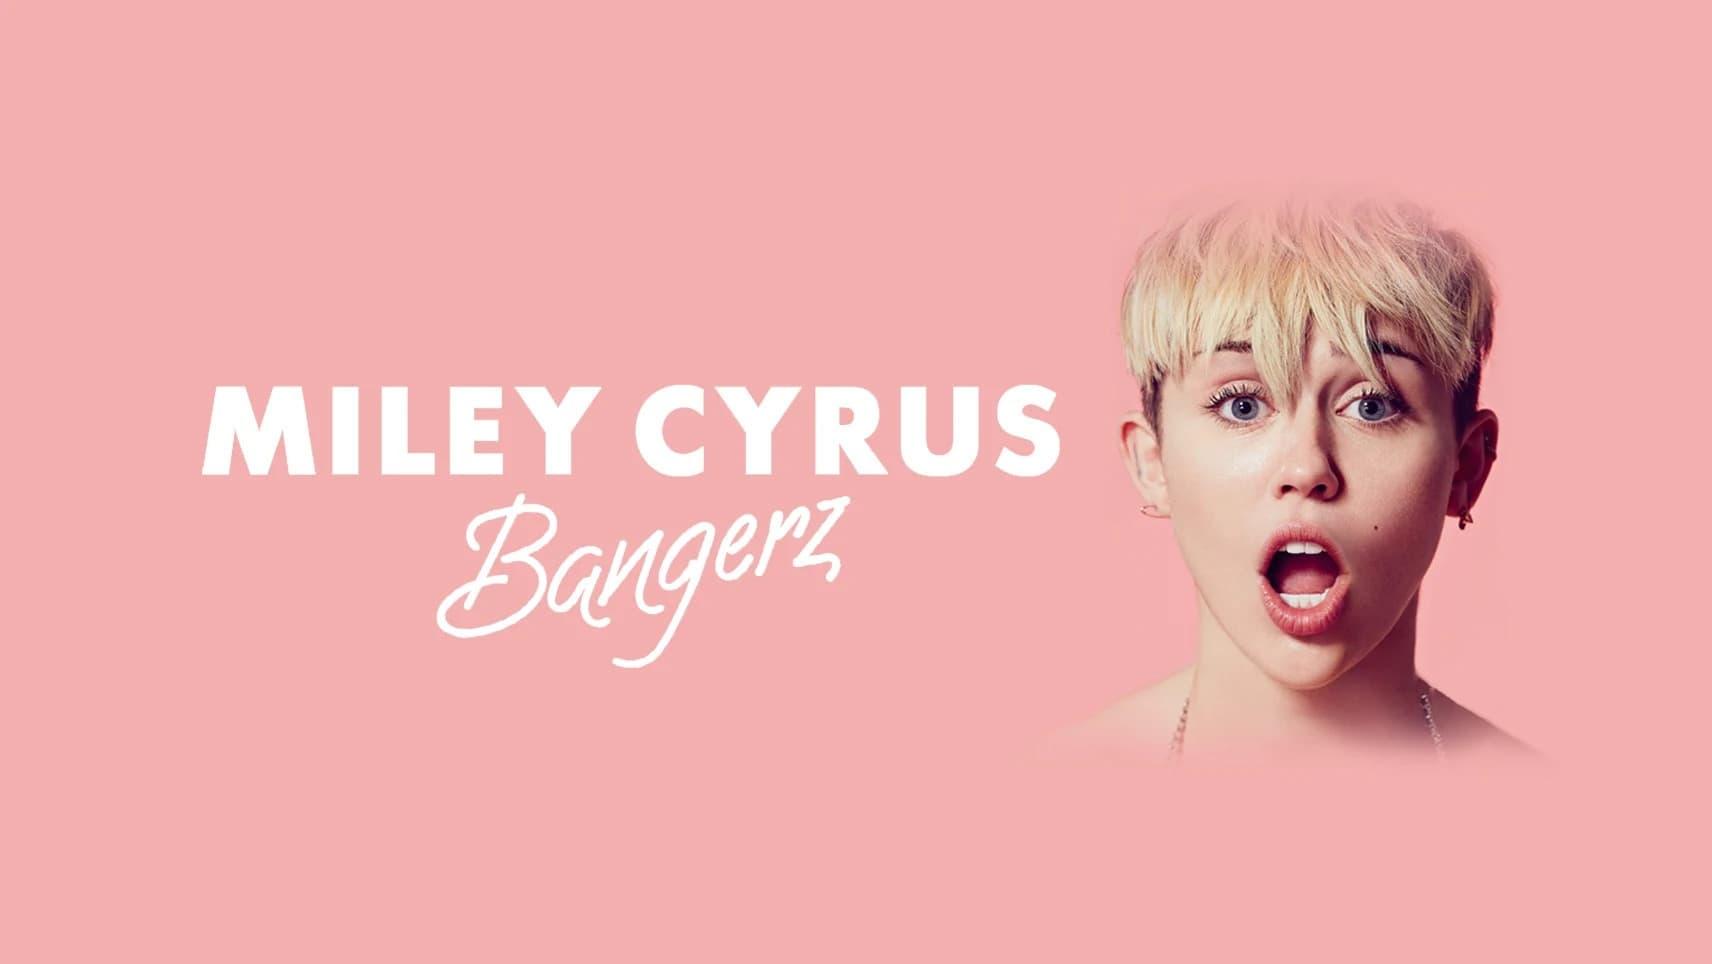 Miley Cyrus: Bangerz Tour backdrop